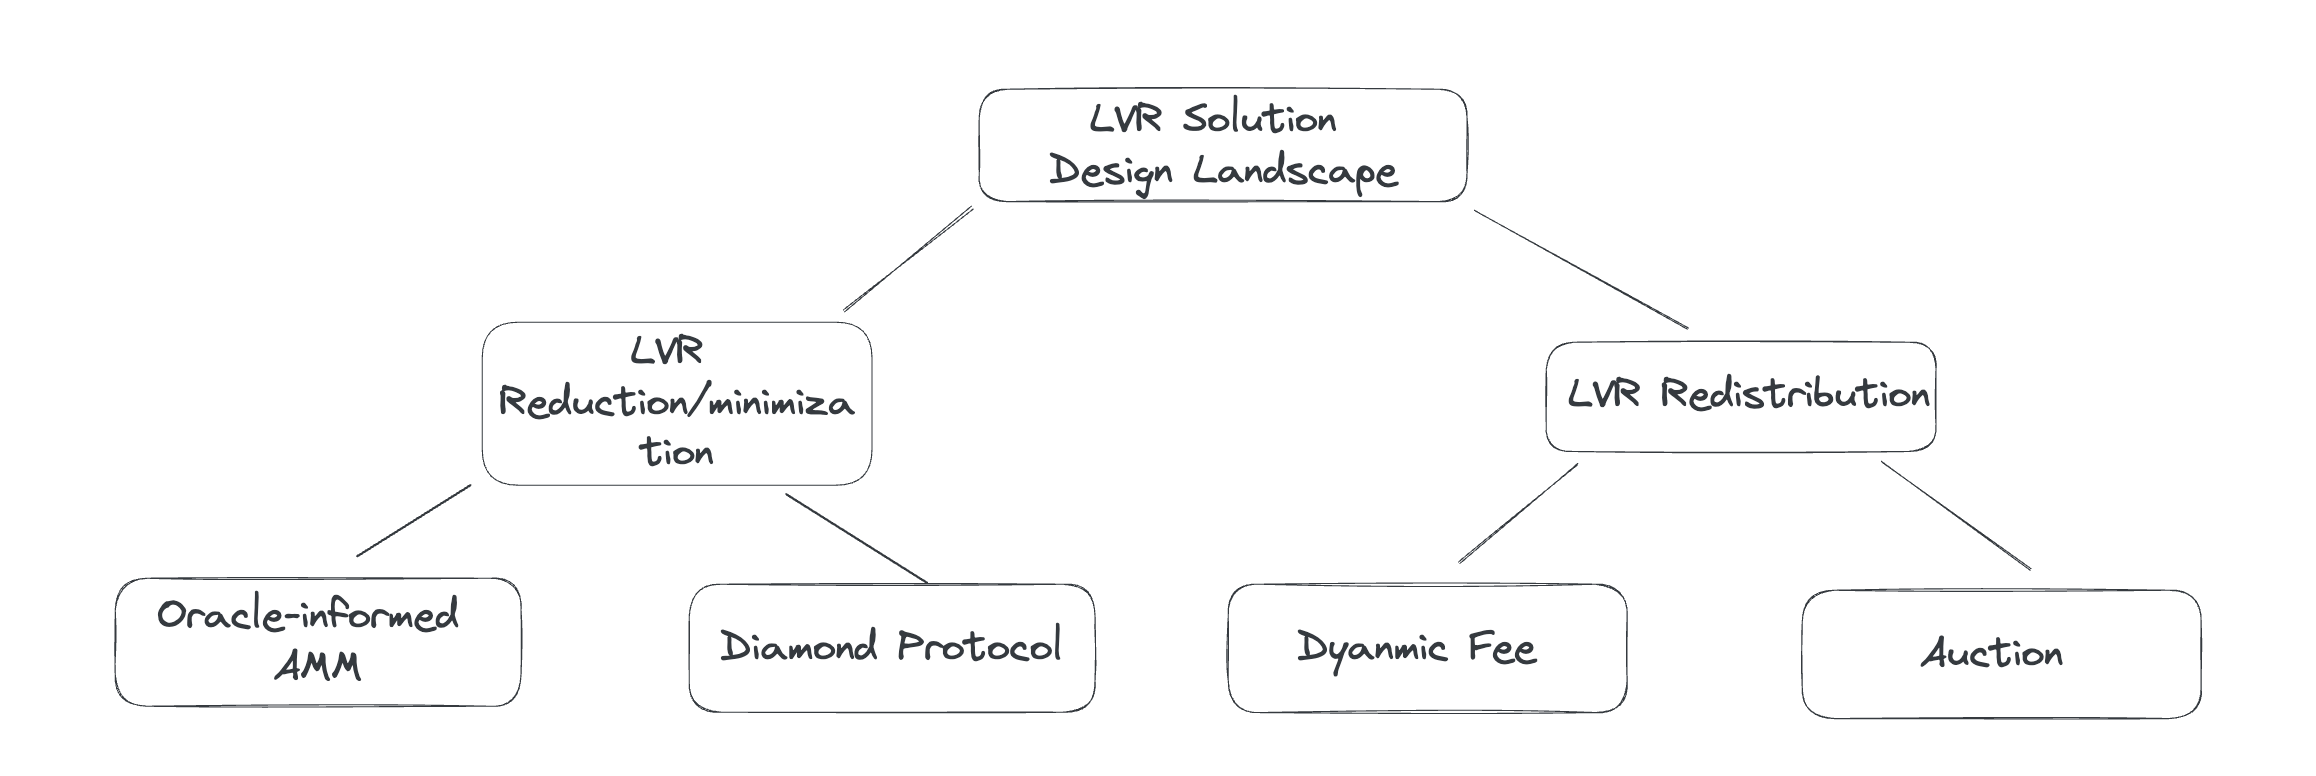 LVR Solution Design Landscape